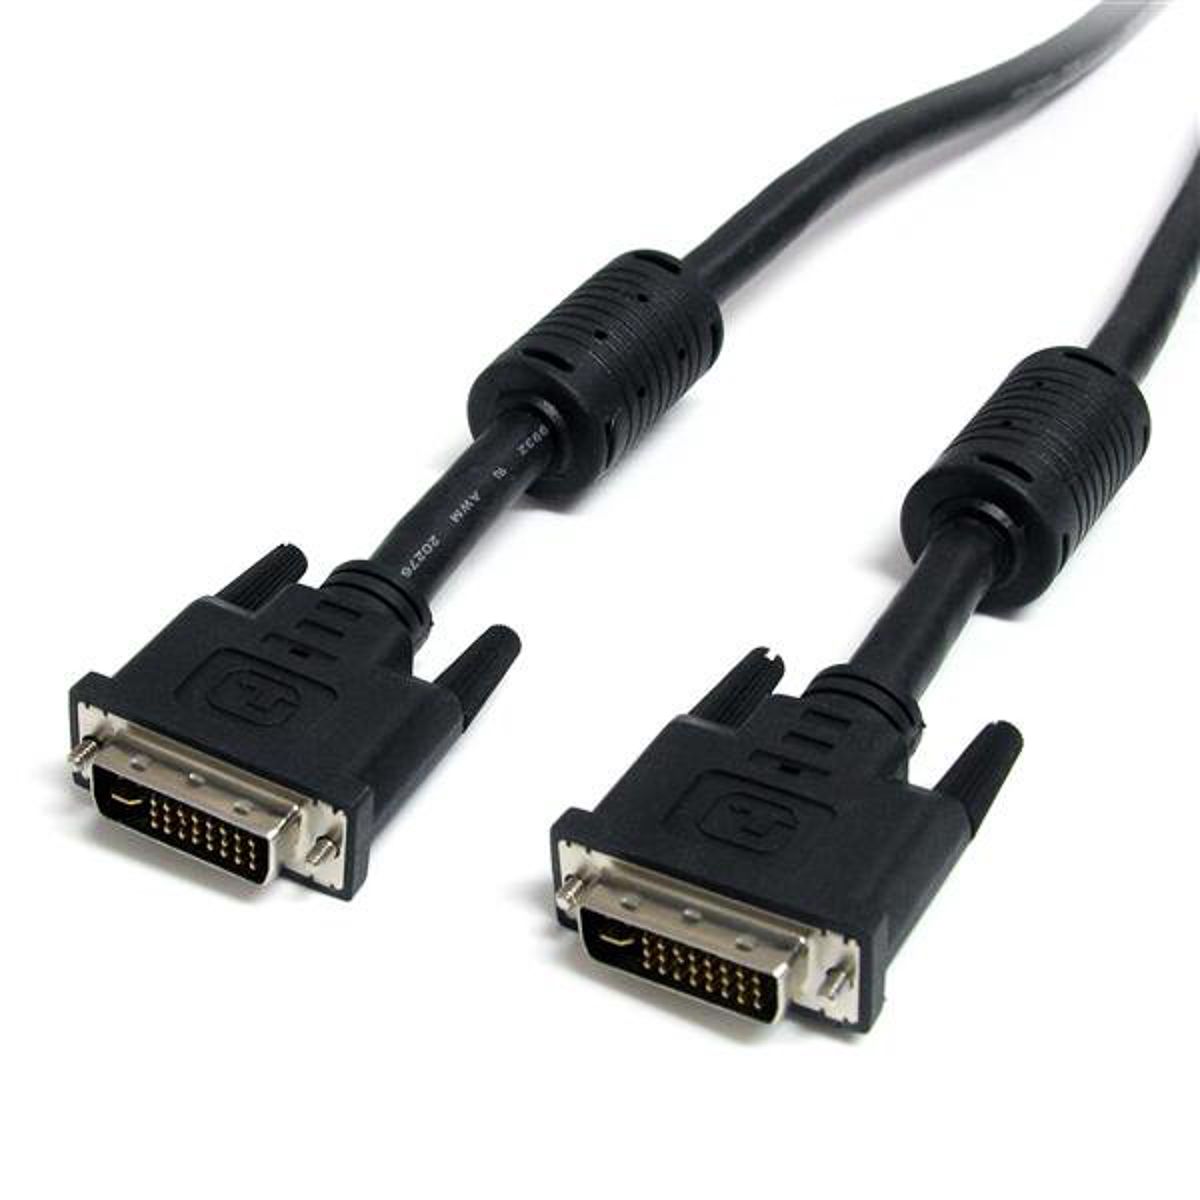 Cable DVI Startech de color Negro, con. A: DVI-I Dual Link macho, con. B: DVI-I Dual Link macho, long. 1.8m